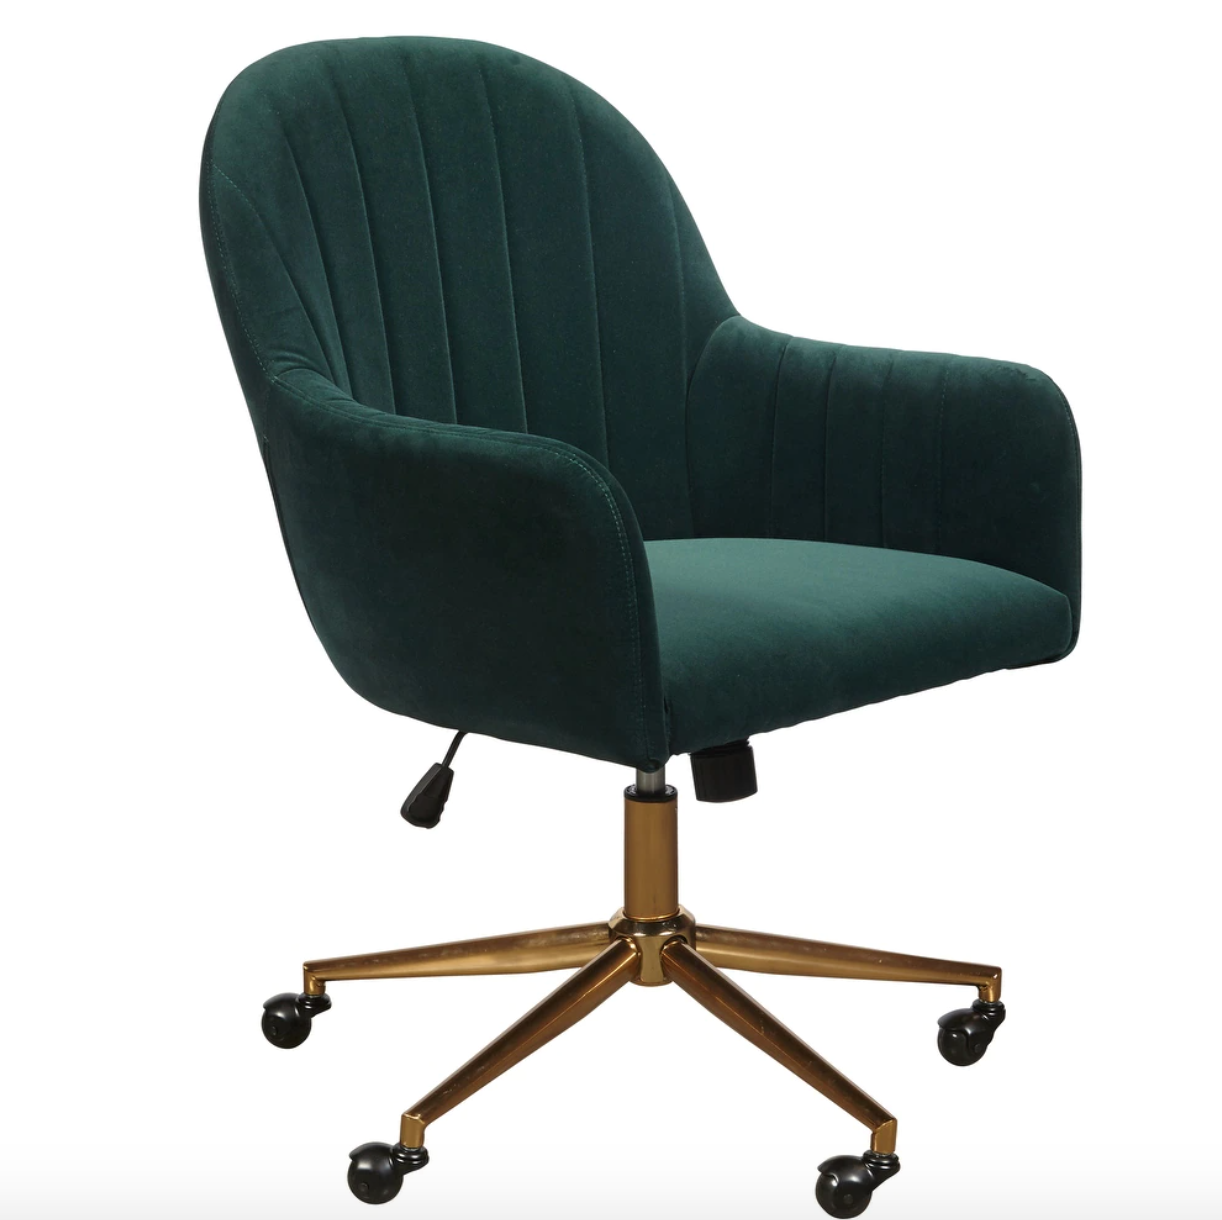 velvet green chair